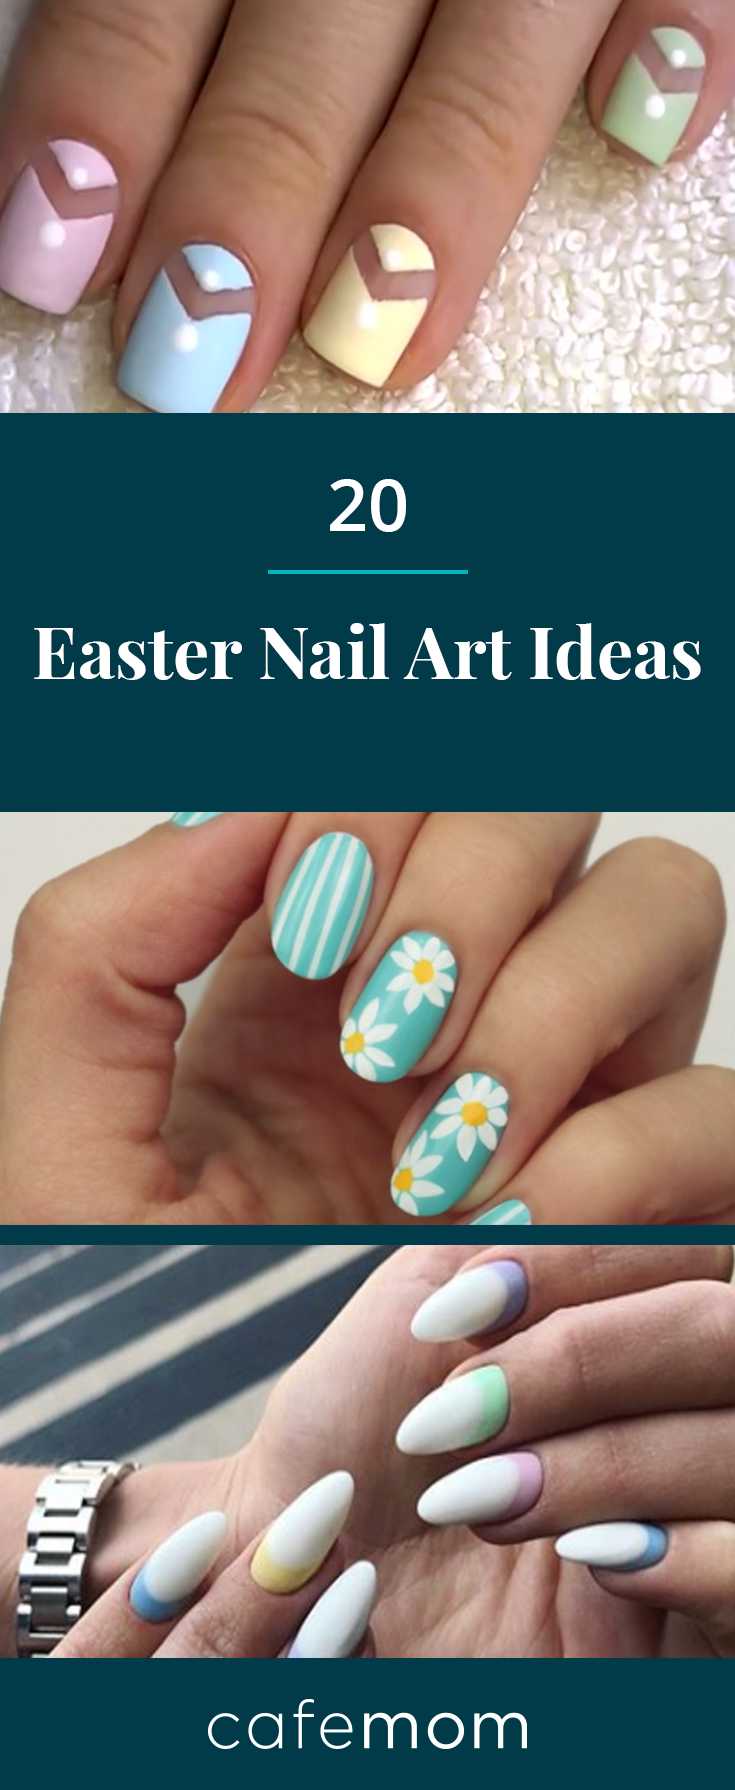 20 Unique & Pretty Easter Nail Ideas | CafeMom.com